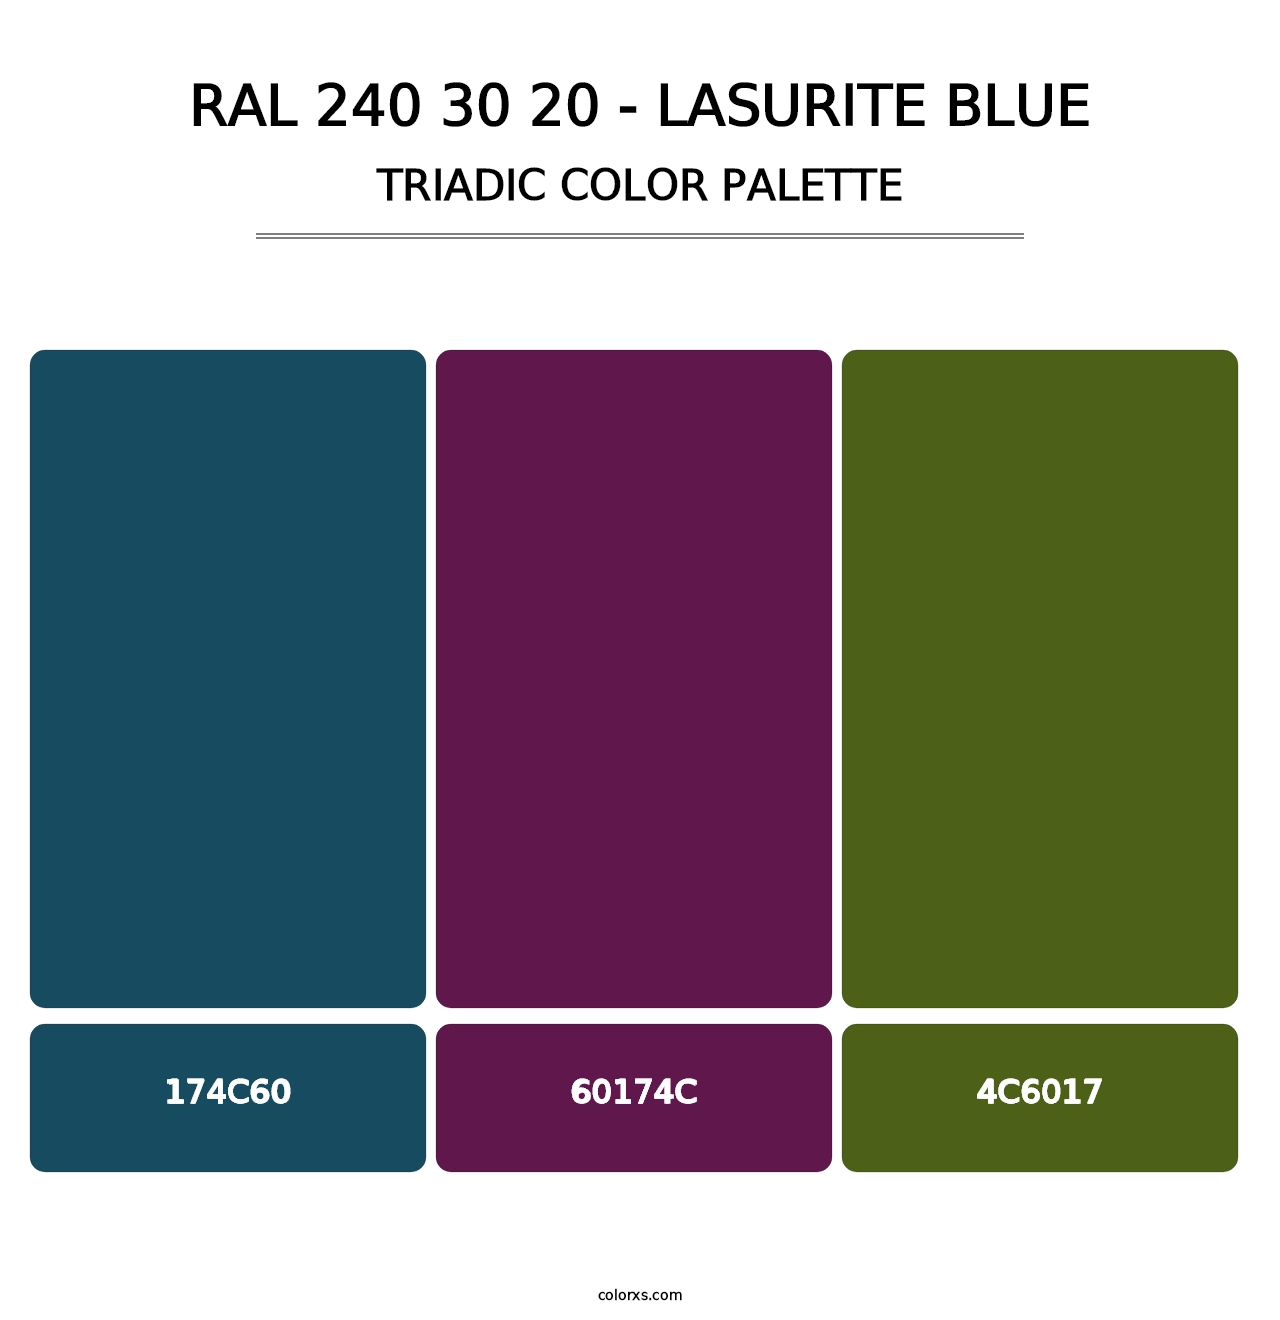 RAL 240 30 20 - Lasurite Blue - Triadic Color Palette